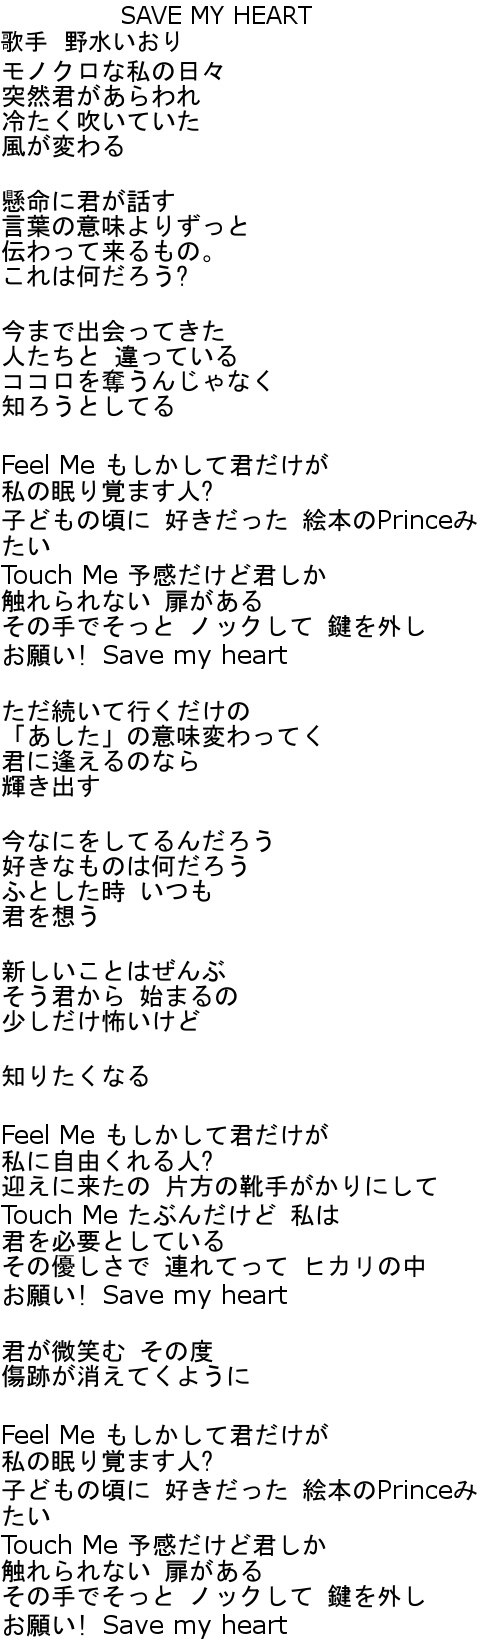 デート・ア・ライブ ED2 SAVE MY HEART